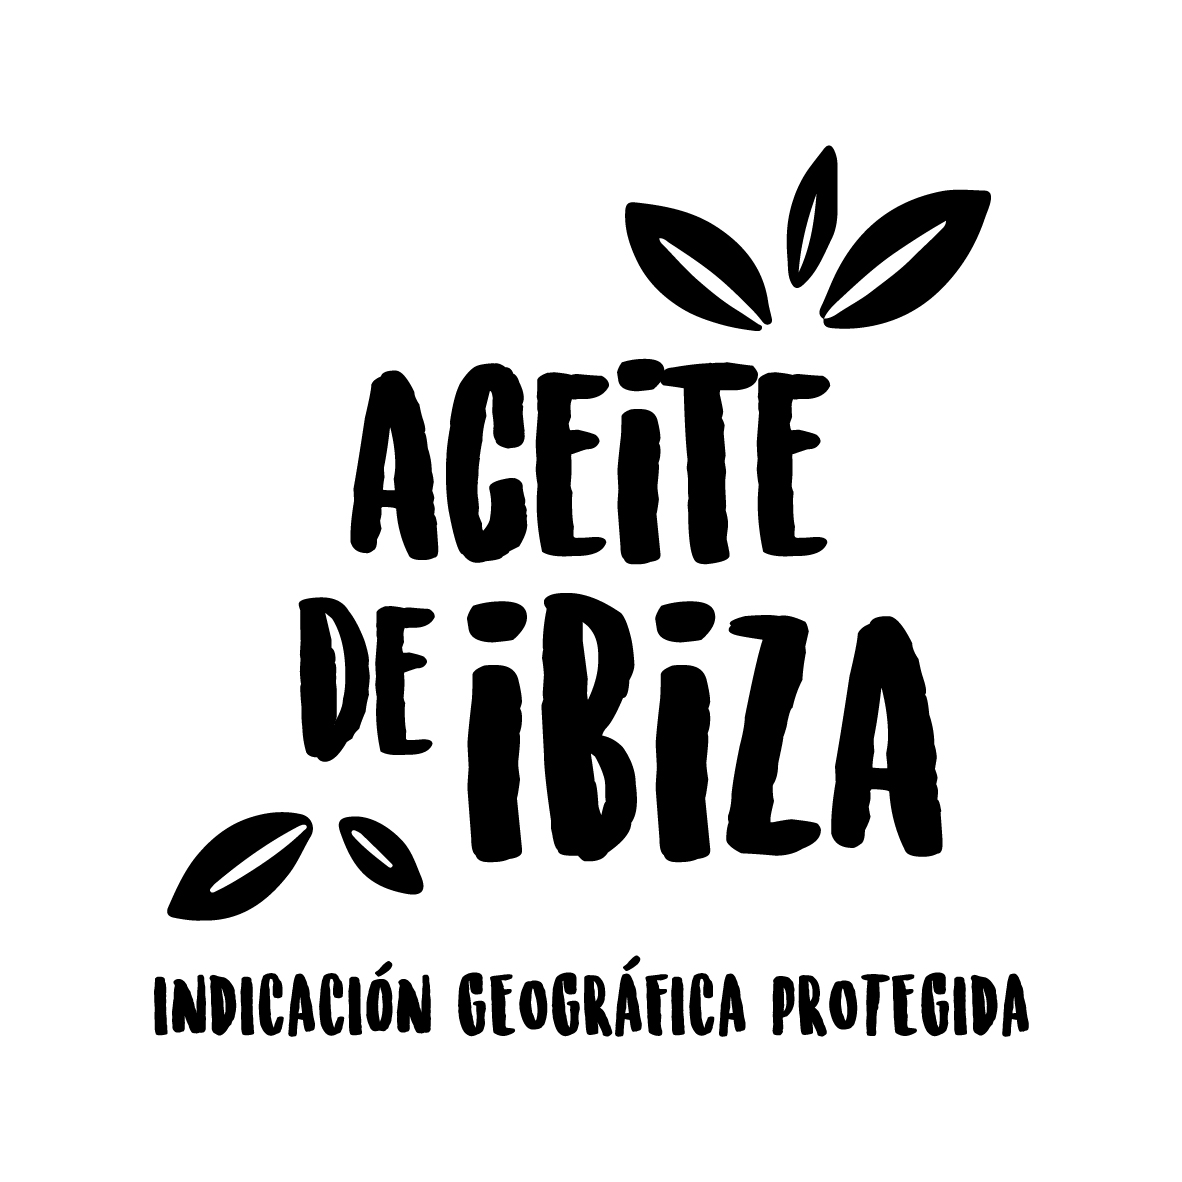 Aceite de Ibiza - Islas Baleares - Productos agroalimentarios, denominaciones de origen y gastronomía balear